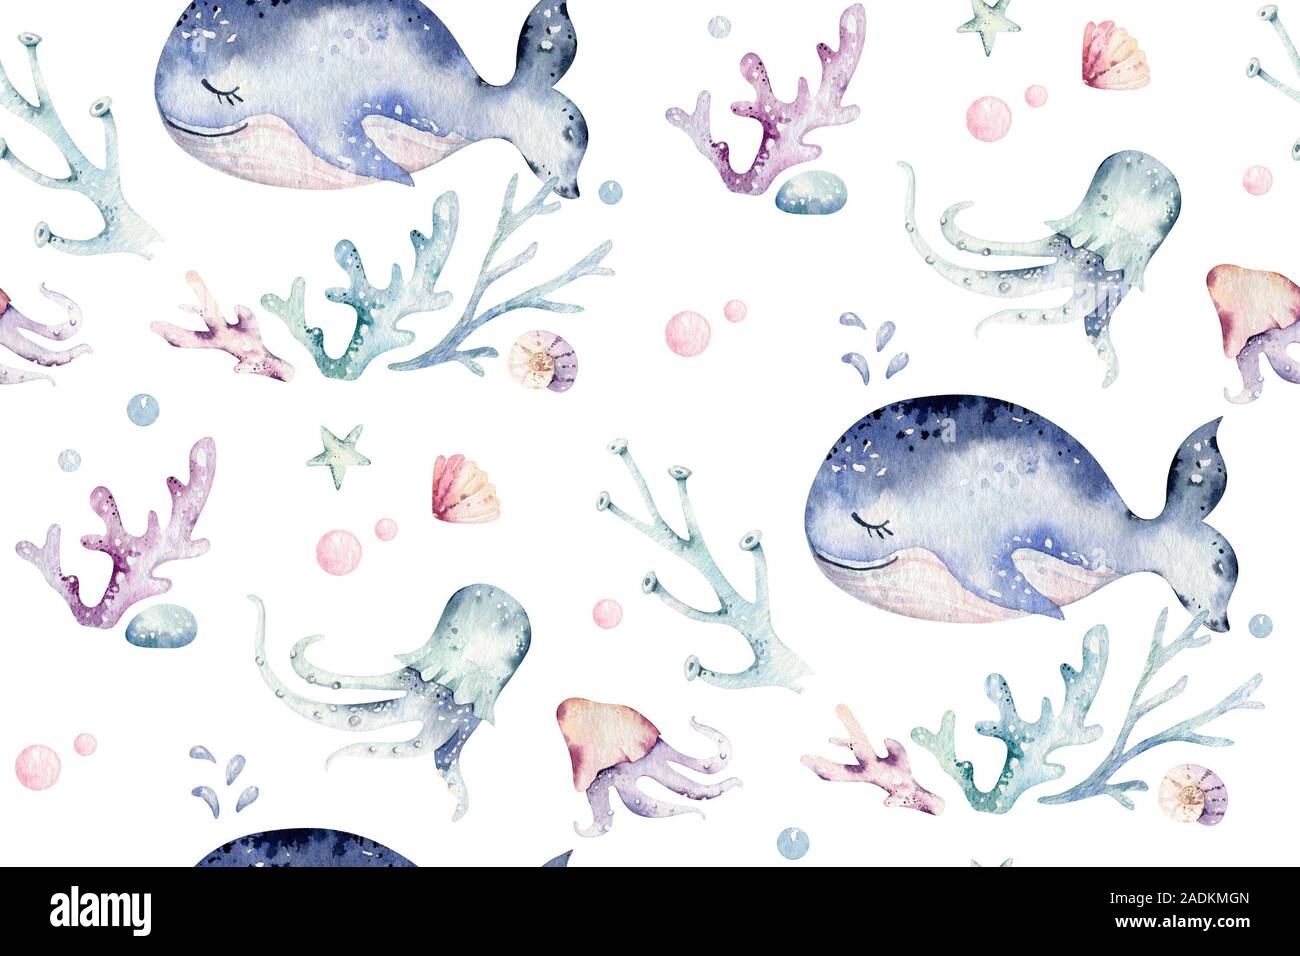 Los animales del mar azul océano acuarela perfecta pettern peces, tortugas, ballenas y coral. Shell de fondo del acuario. Starfish náuticas ilustración marina Foto de stock